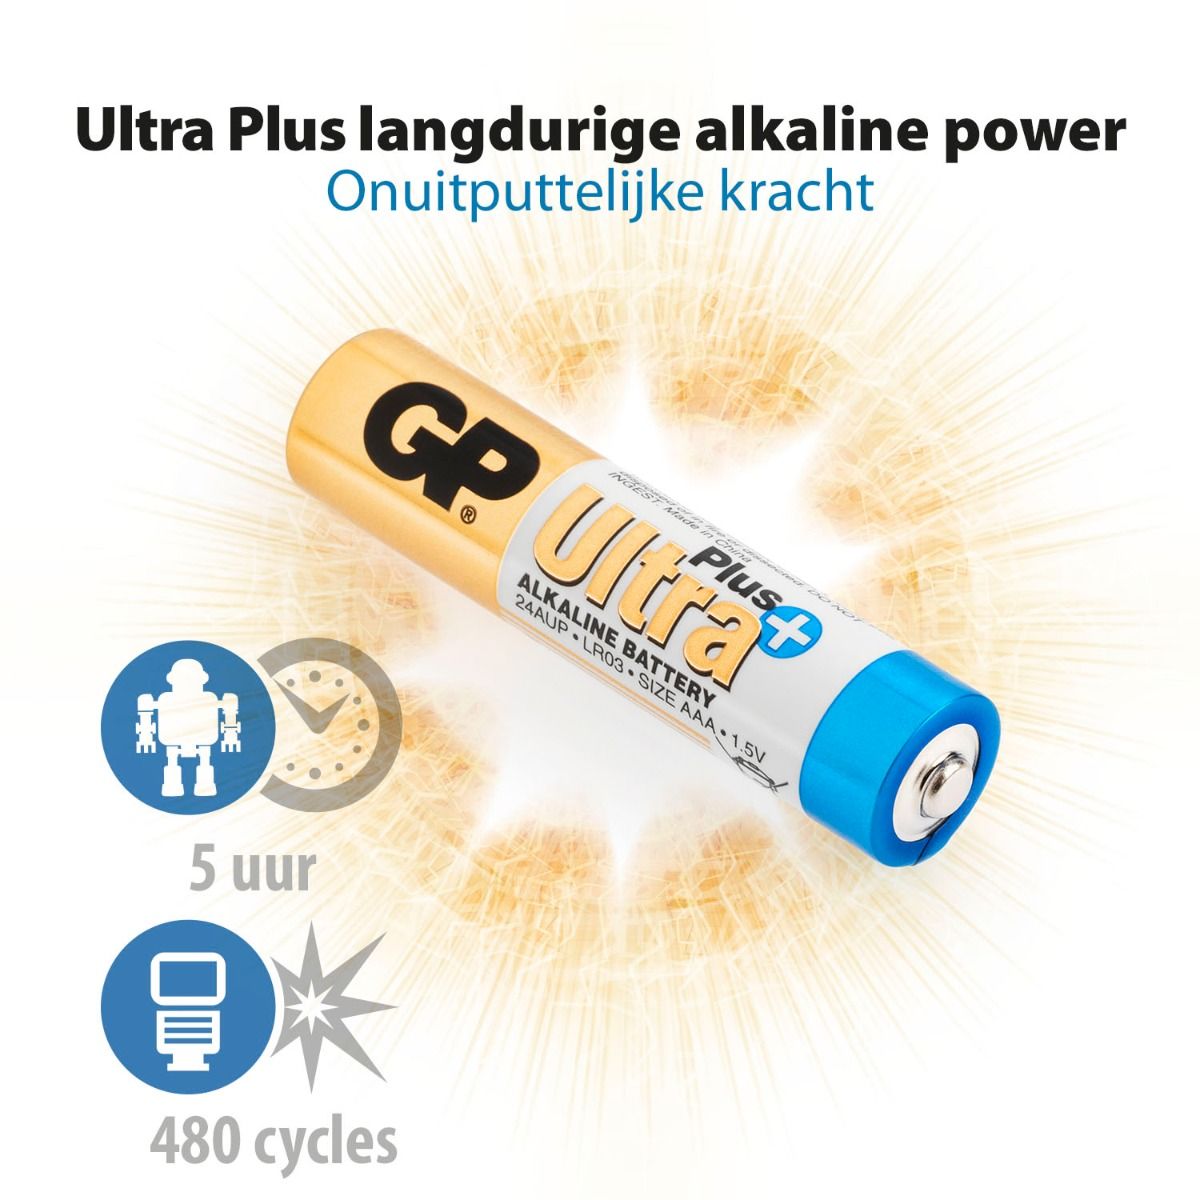 Ultra Plus Alkaline AAA - 4 batterijen langdurige alkaline power